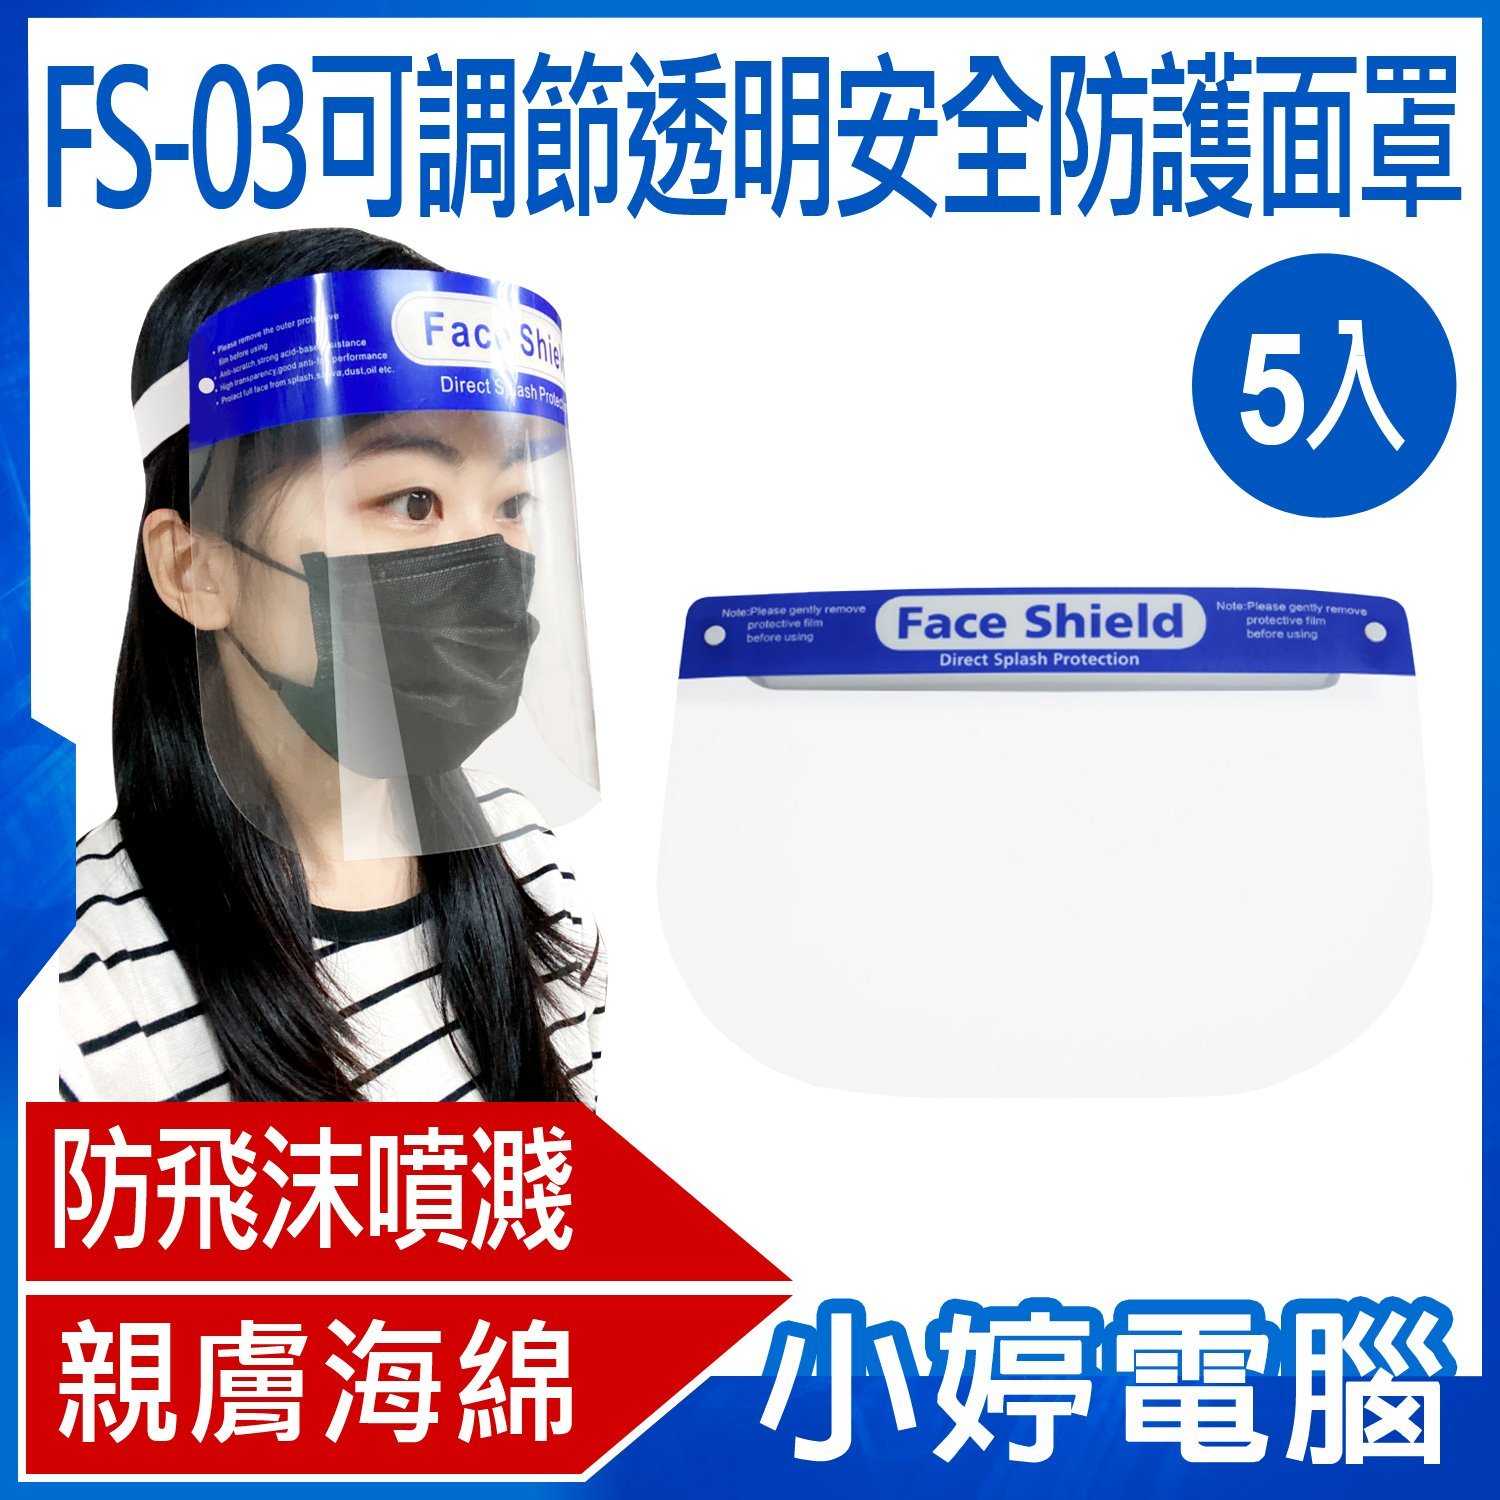 【小婷電腦】FS-03可調節透明安全防護面罩 防飛沫噴濺 高度透明 親膚海綿 加大面罩 面具 全臉防護 5入